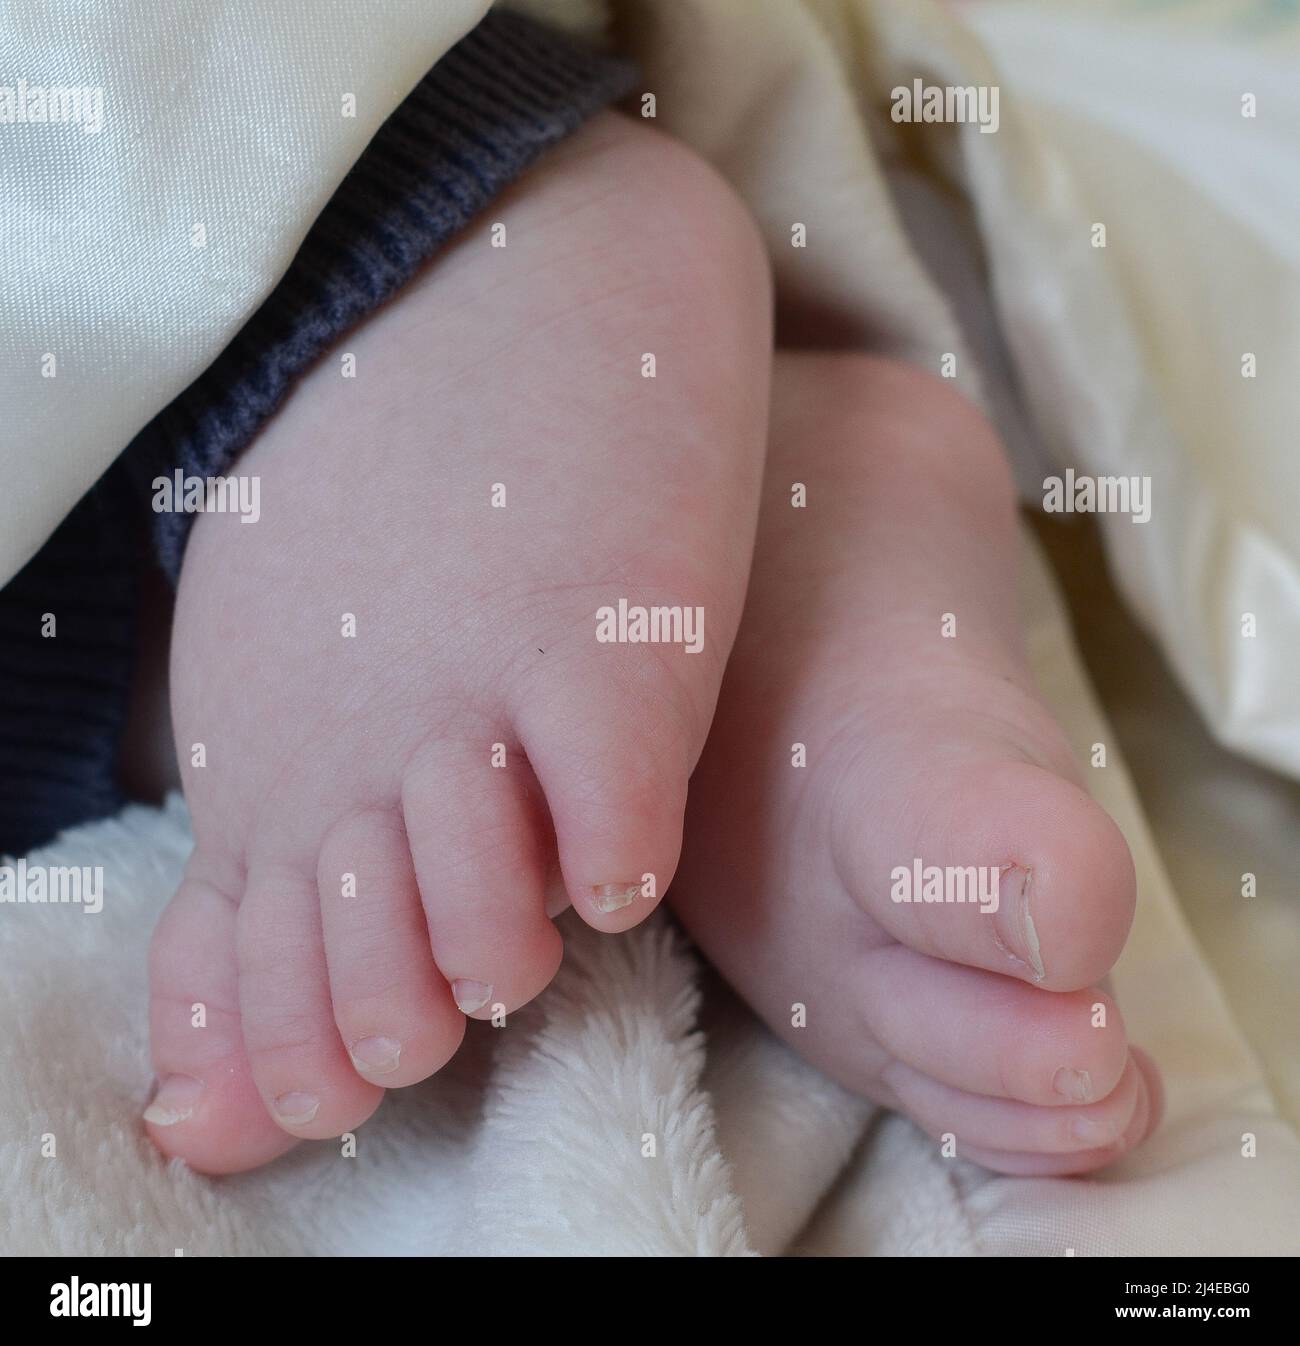 Newborn Baby Feet And Hands Stock Photo